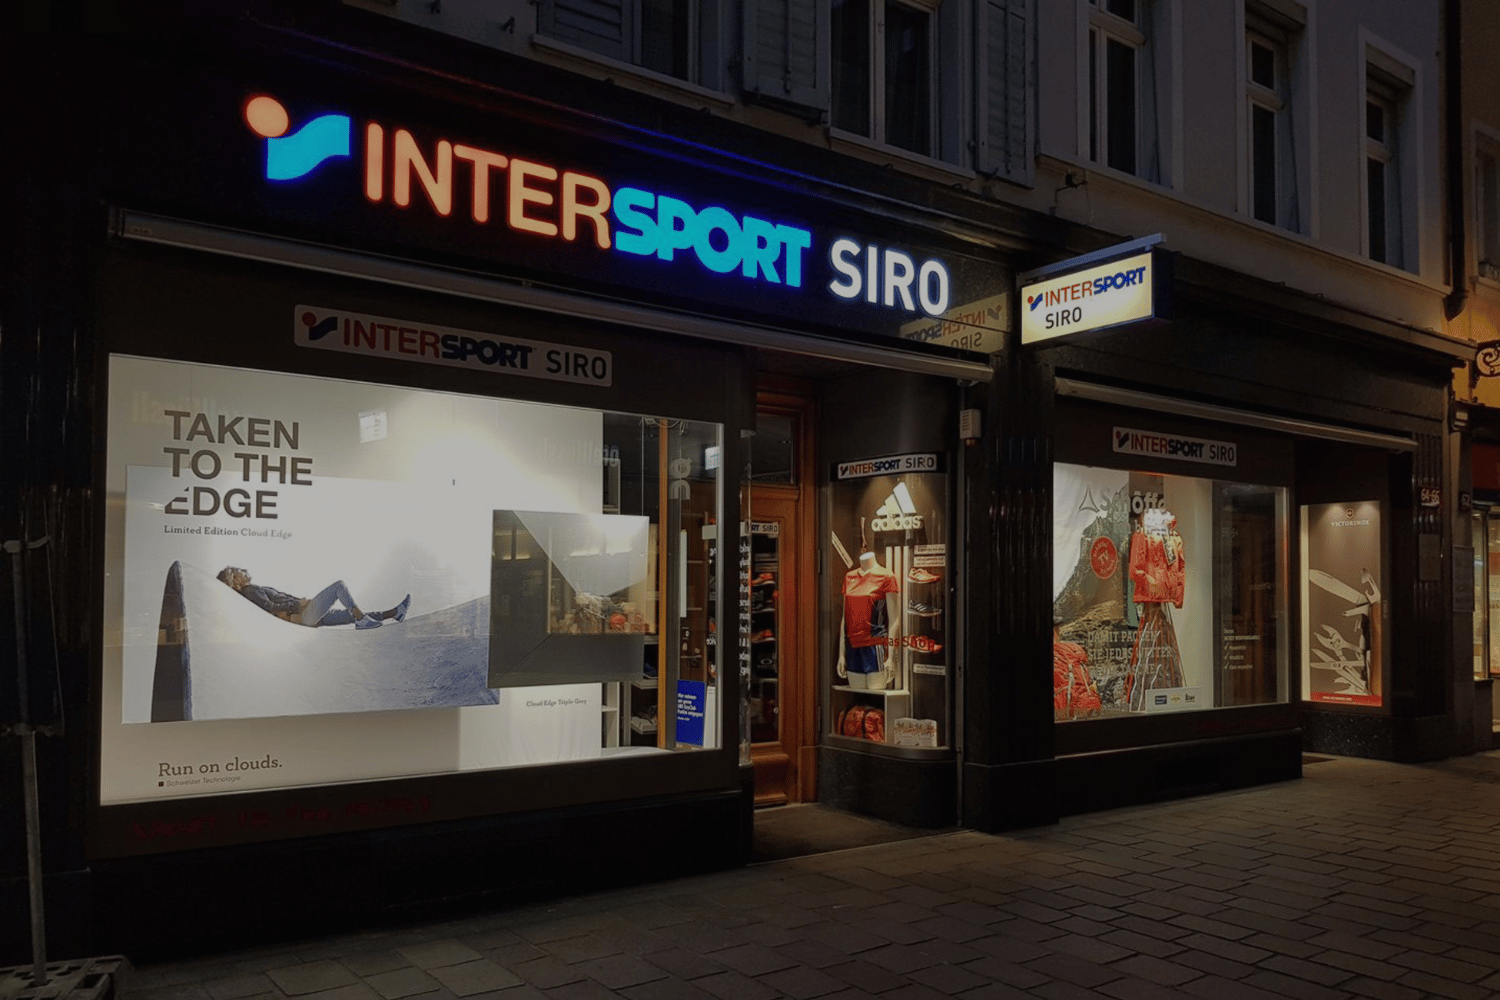 Intersport Siro Referenzen My Online Marketing